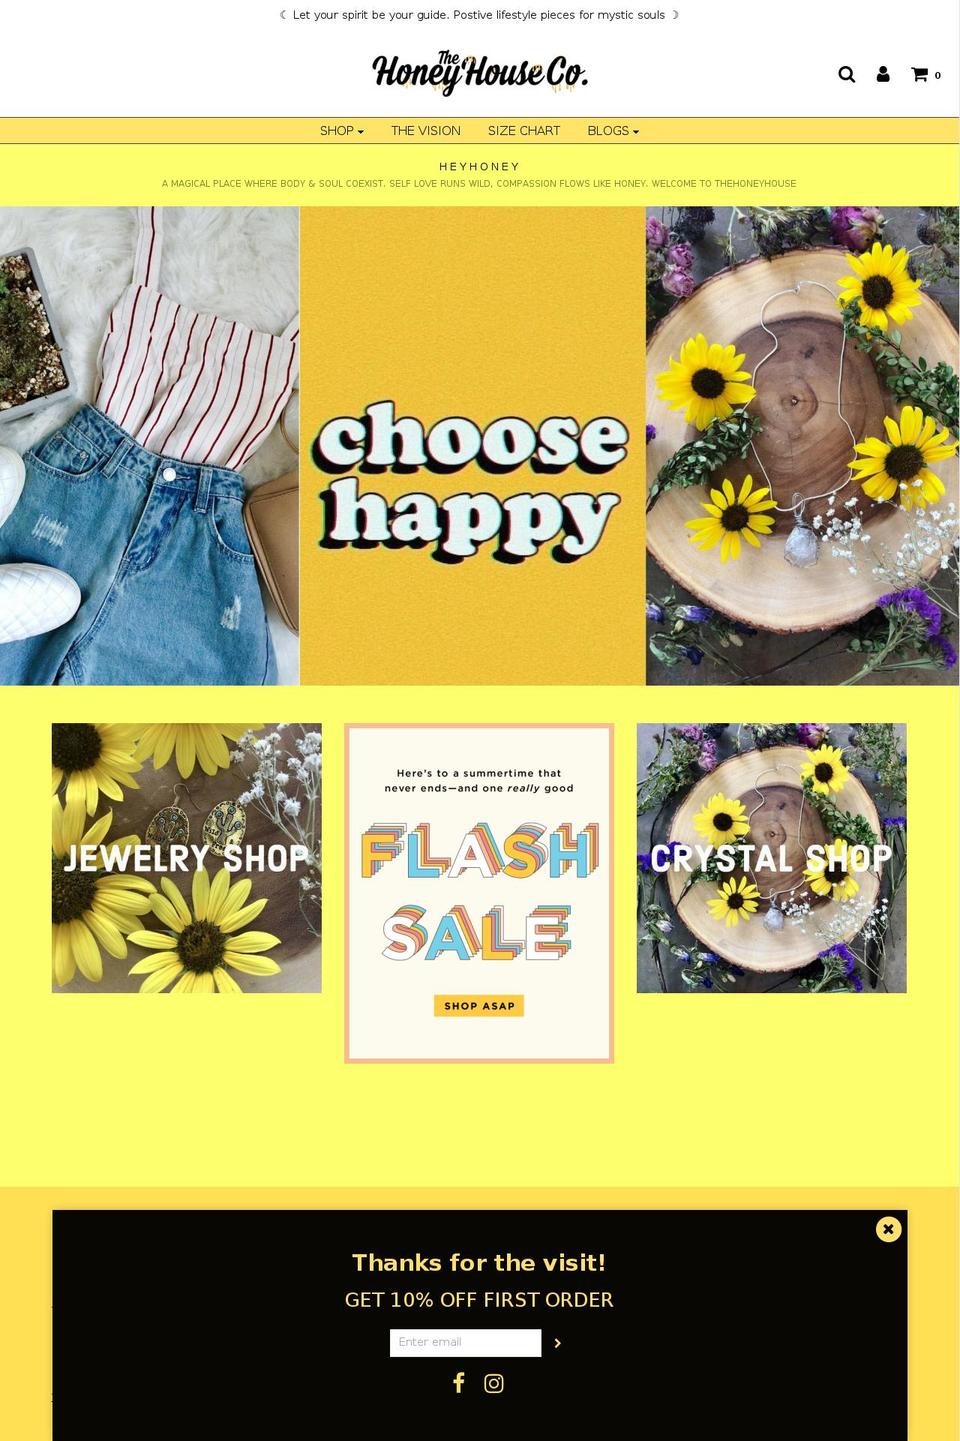 Copy of Envy Shopify theme site example shophoneyhouse.com